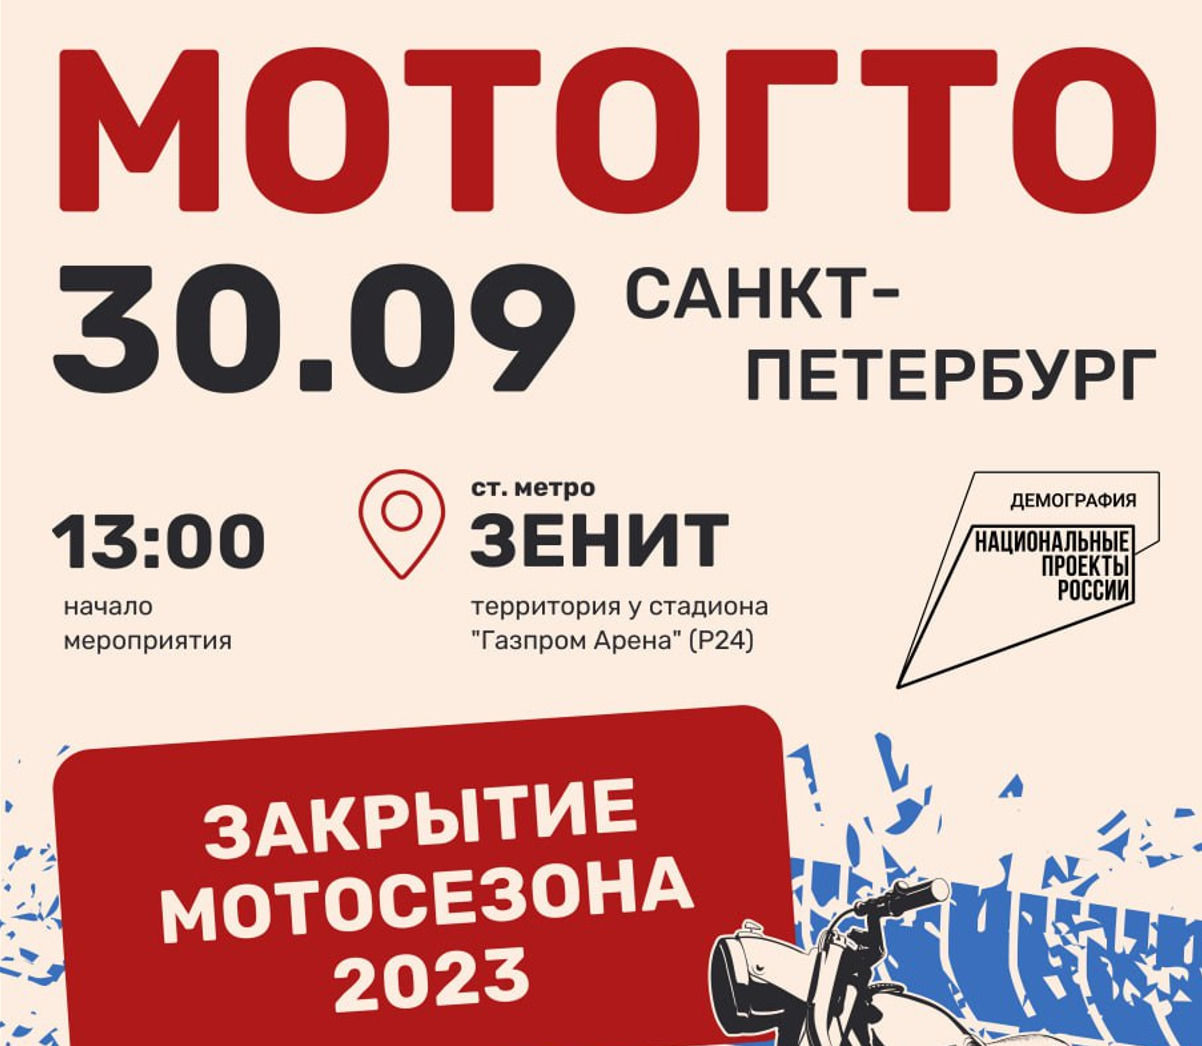 Официальное закрытие мотосезона-2023 в Петербурге пройдет 30 сентября в рамках фестиваля «МотоГТО»